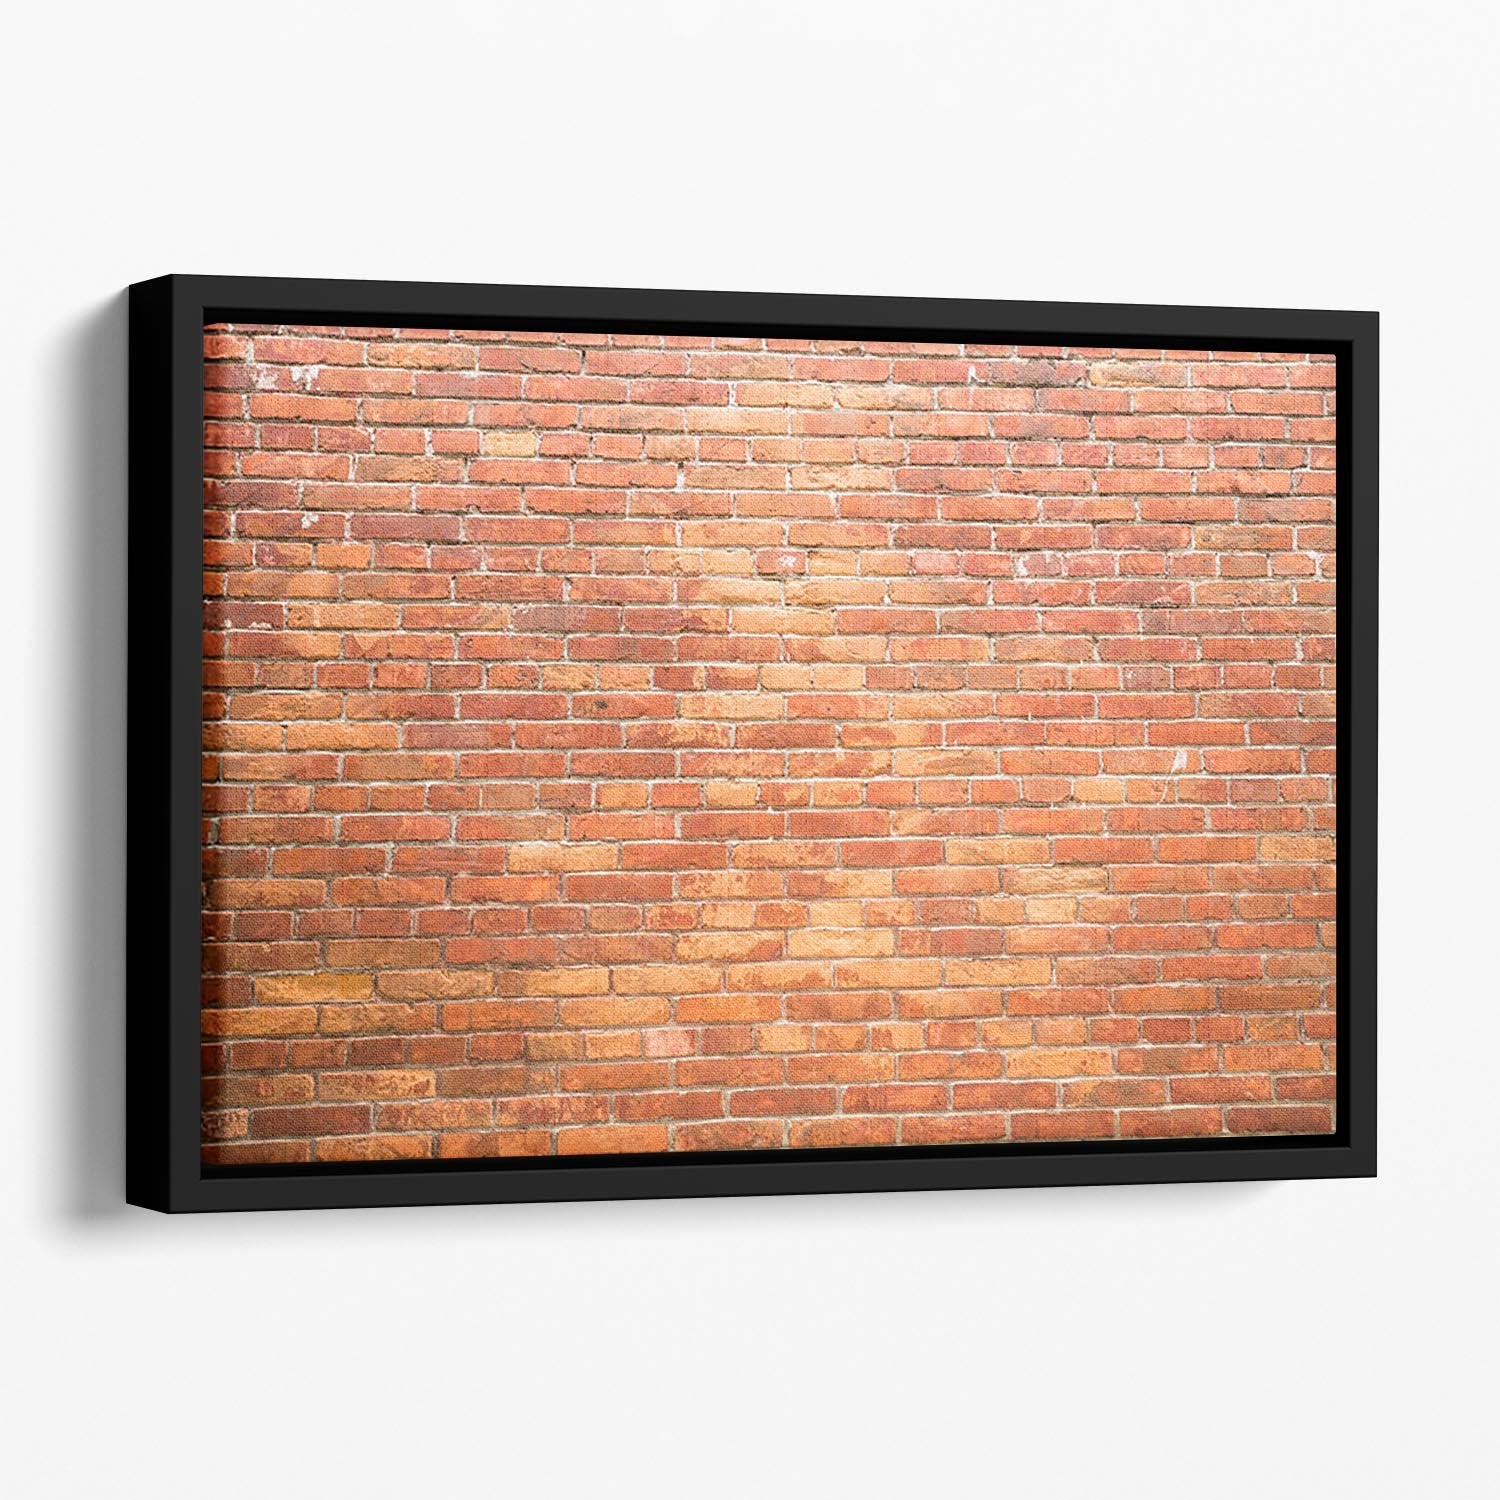 Bricks wall Floating Framed Canvas - Canvas Art Rocks - 1